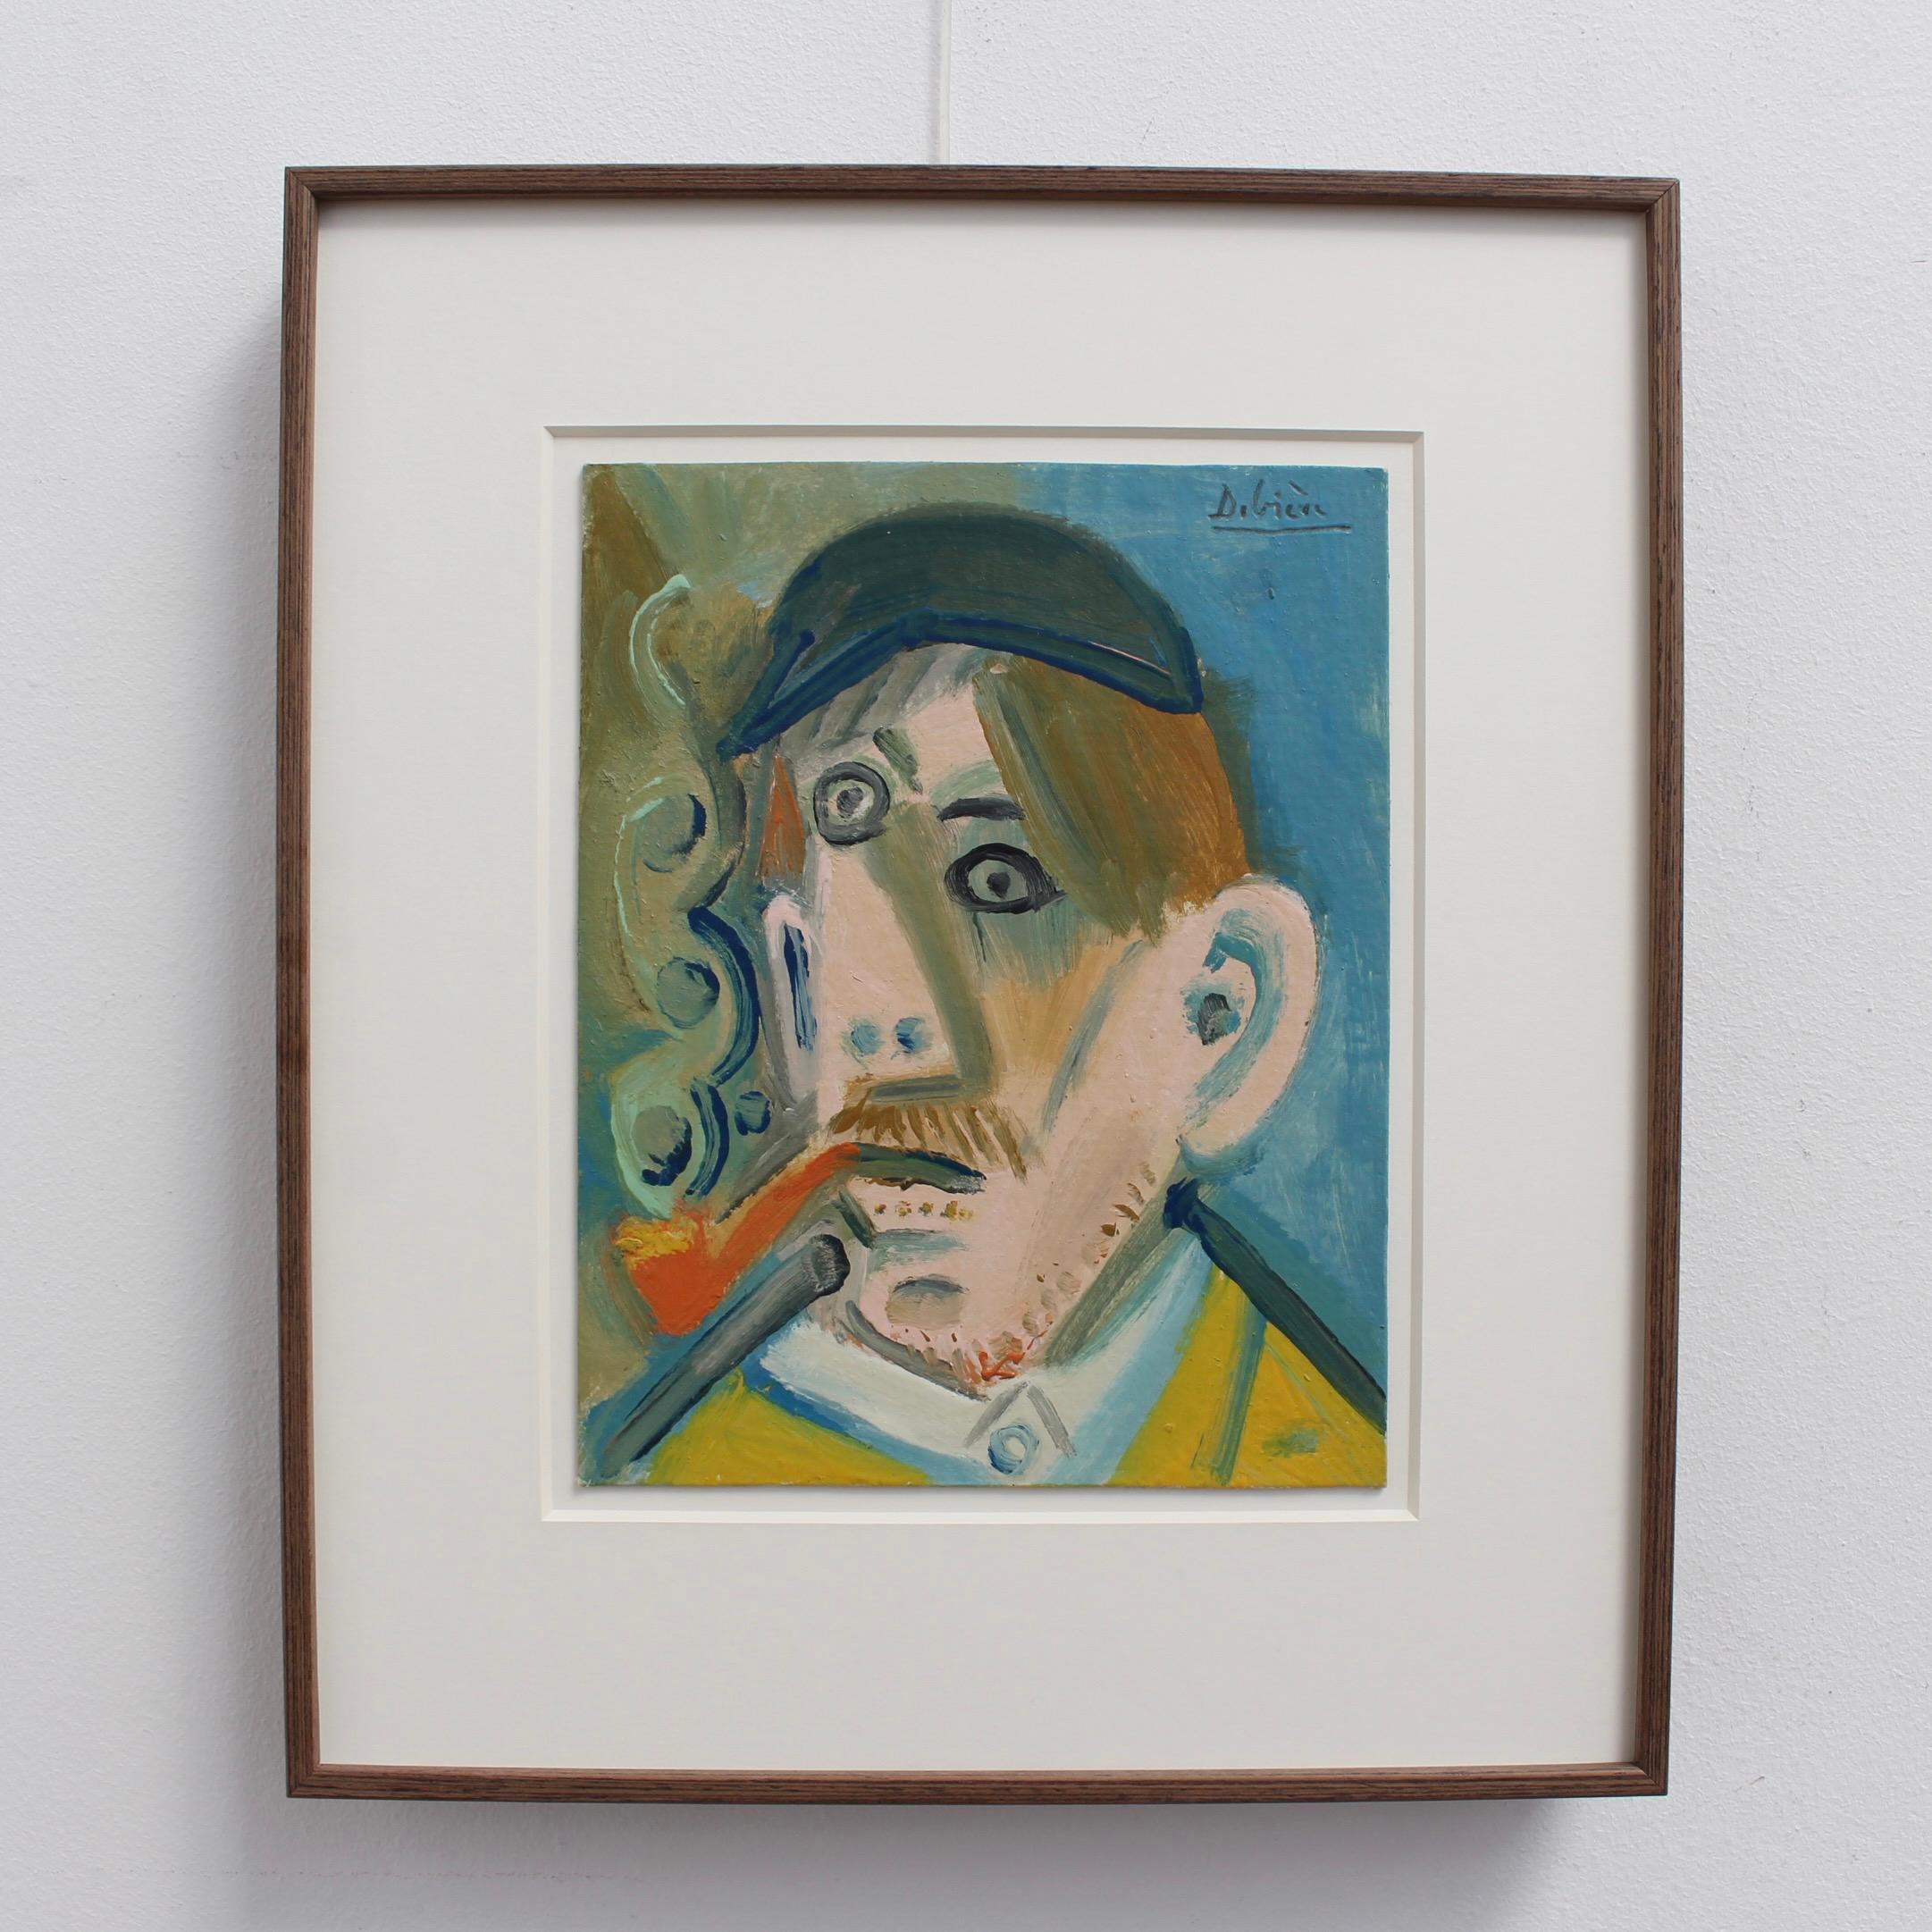 Man Smoking a Pipe - Painting by Raymond Debieve